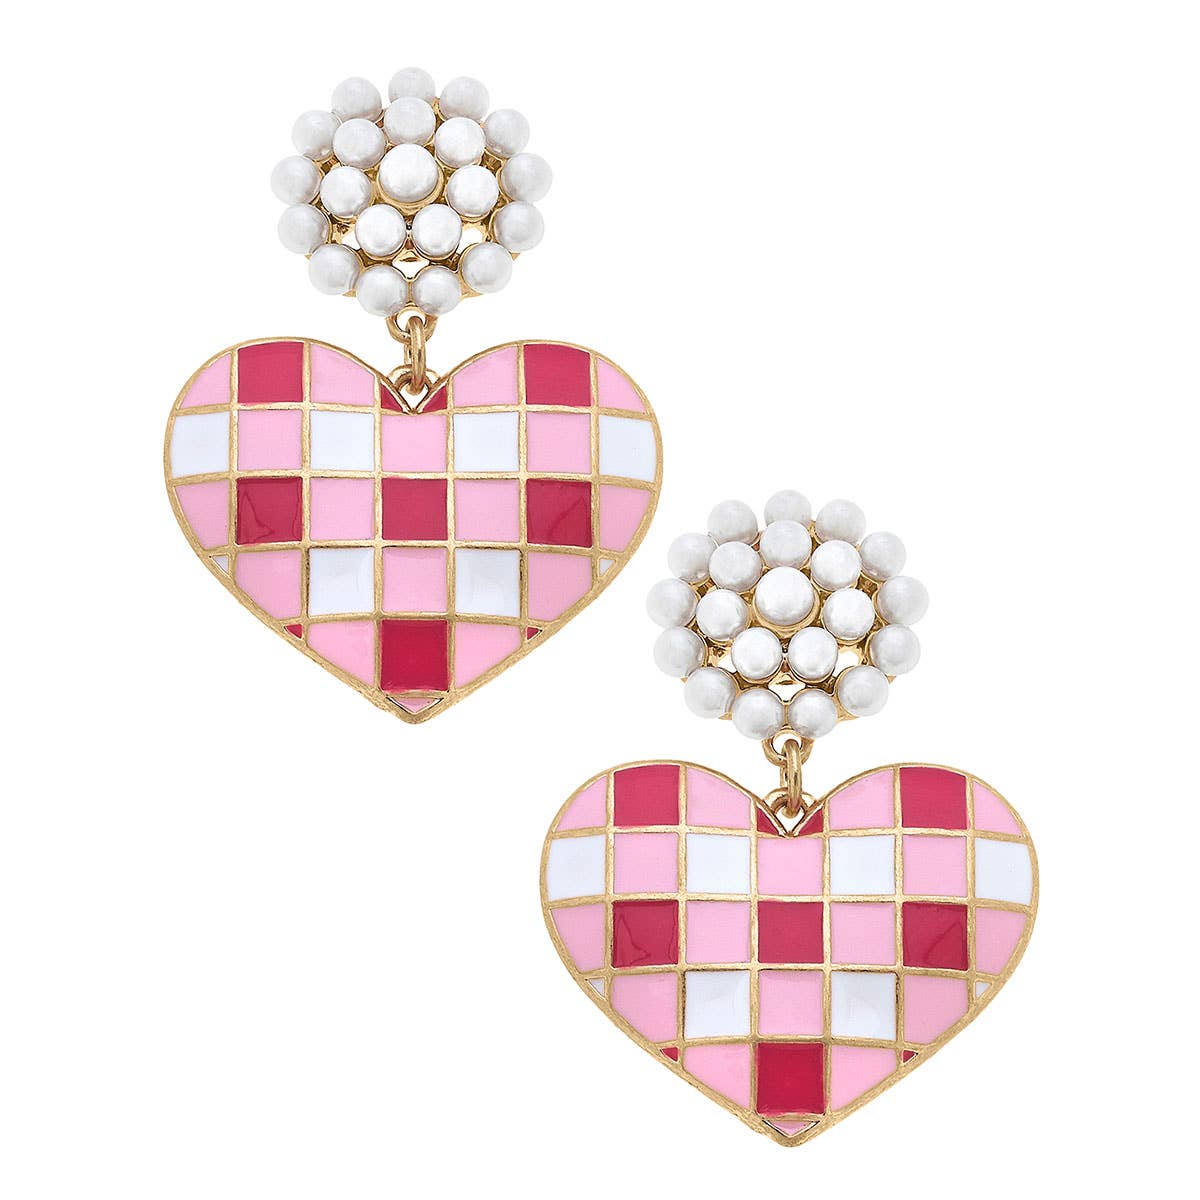 Emmy Gingham Heart Enamel Earrings in Pink & Fuchsia